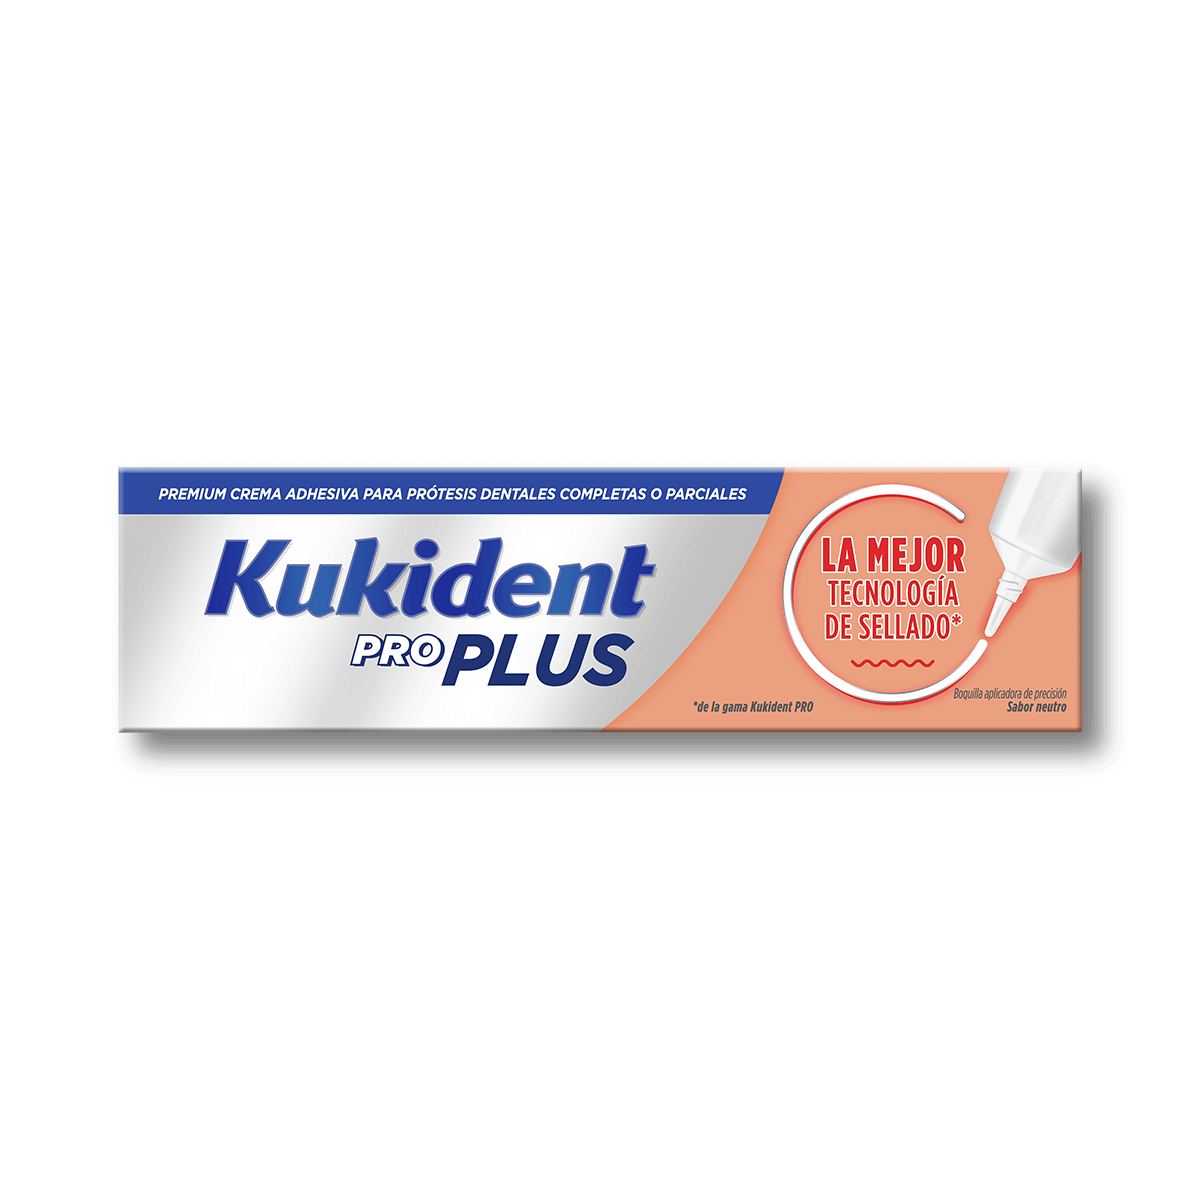 Adhesivo para prótesis dentales Kukident Pro Plus La Mejor Tecnología de Sellado